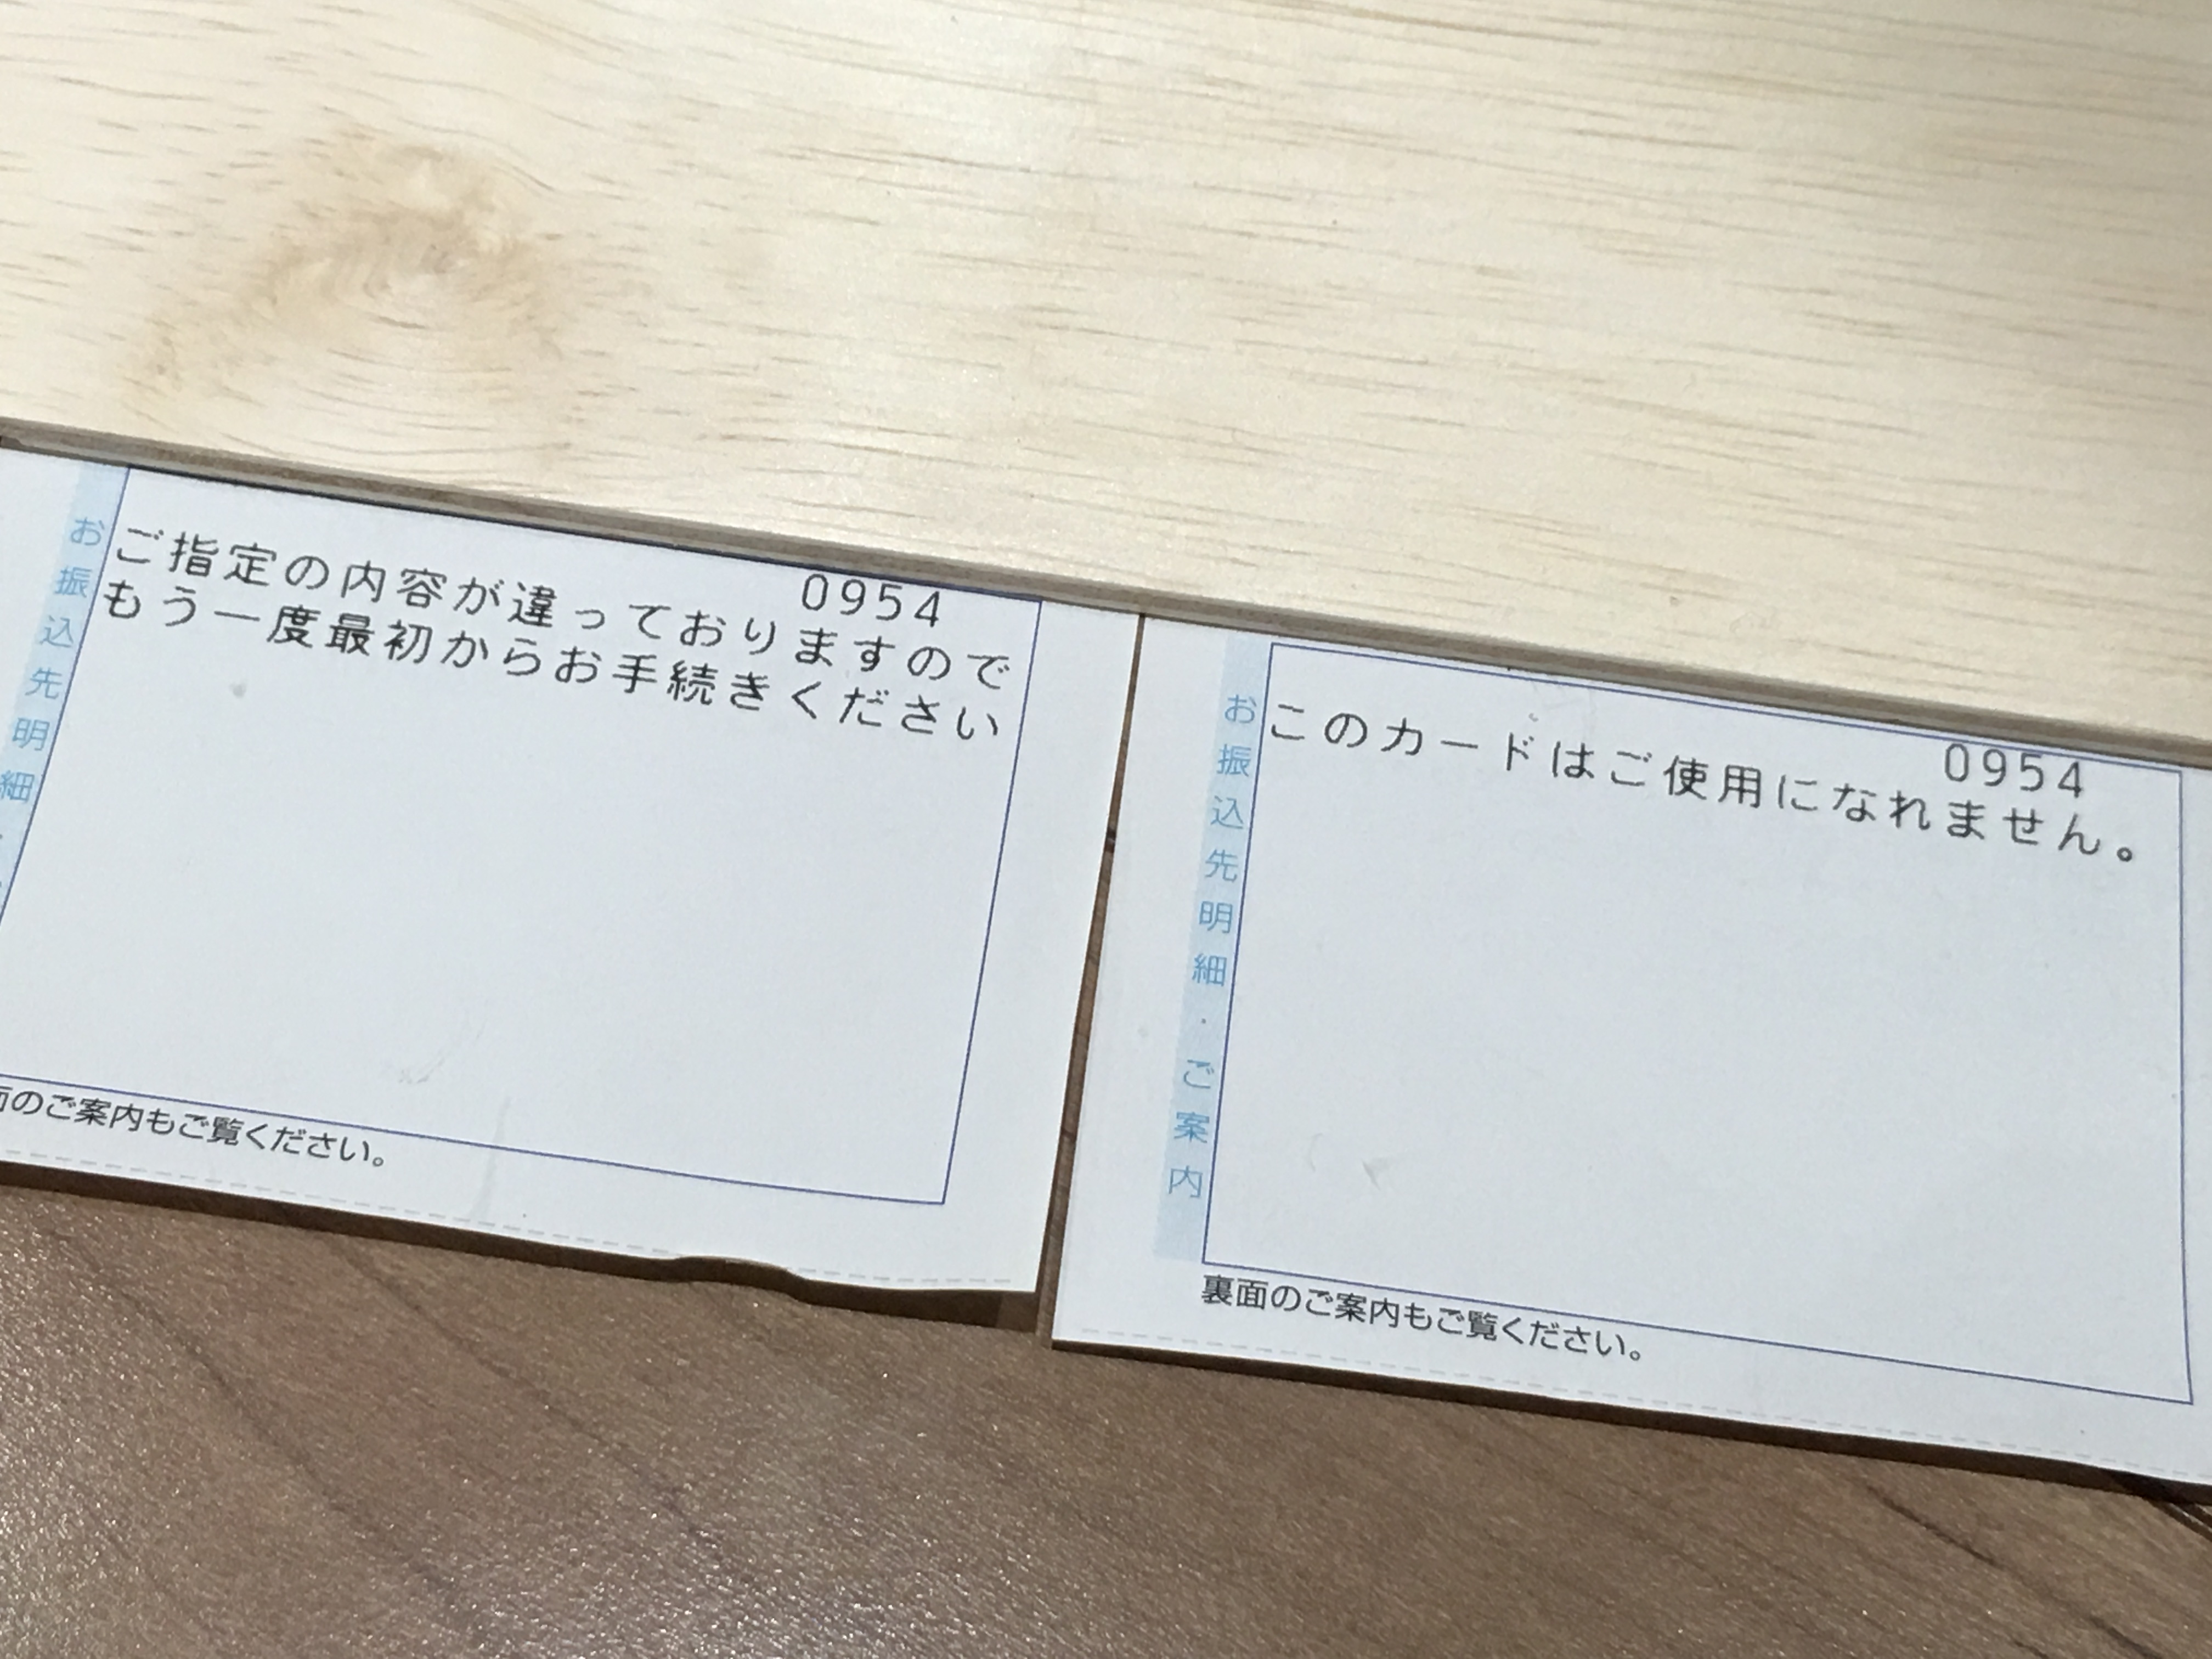 三菱ufj銀行のキャッシュカードが使えない 原因と対処方法は